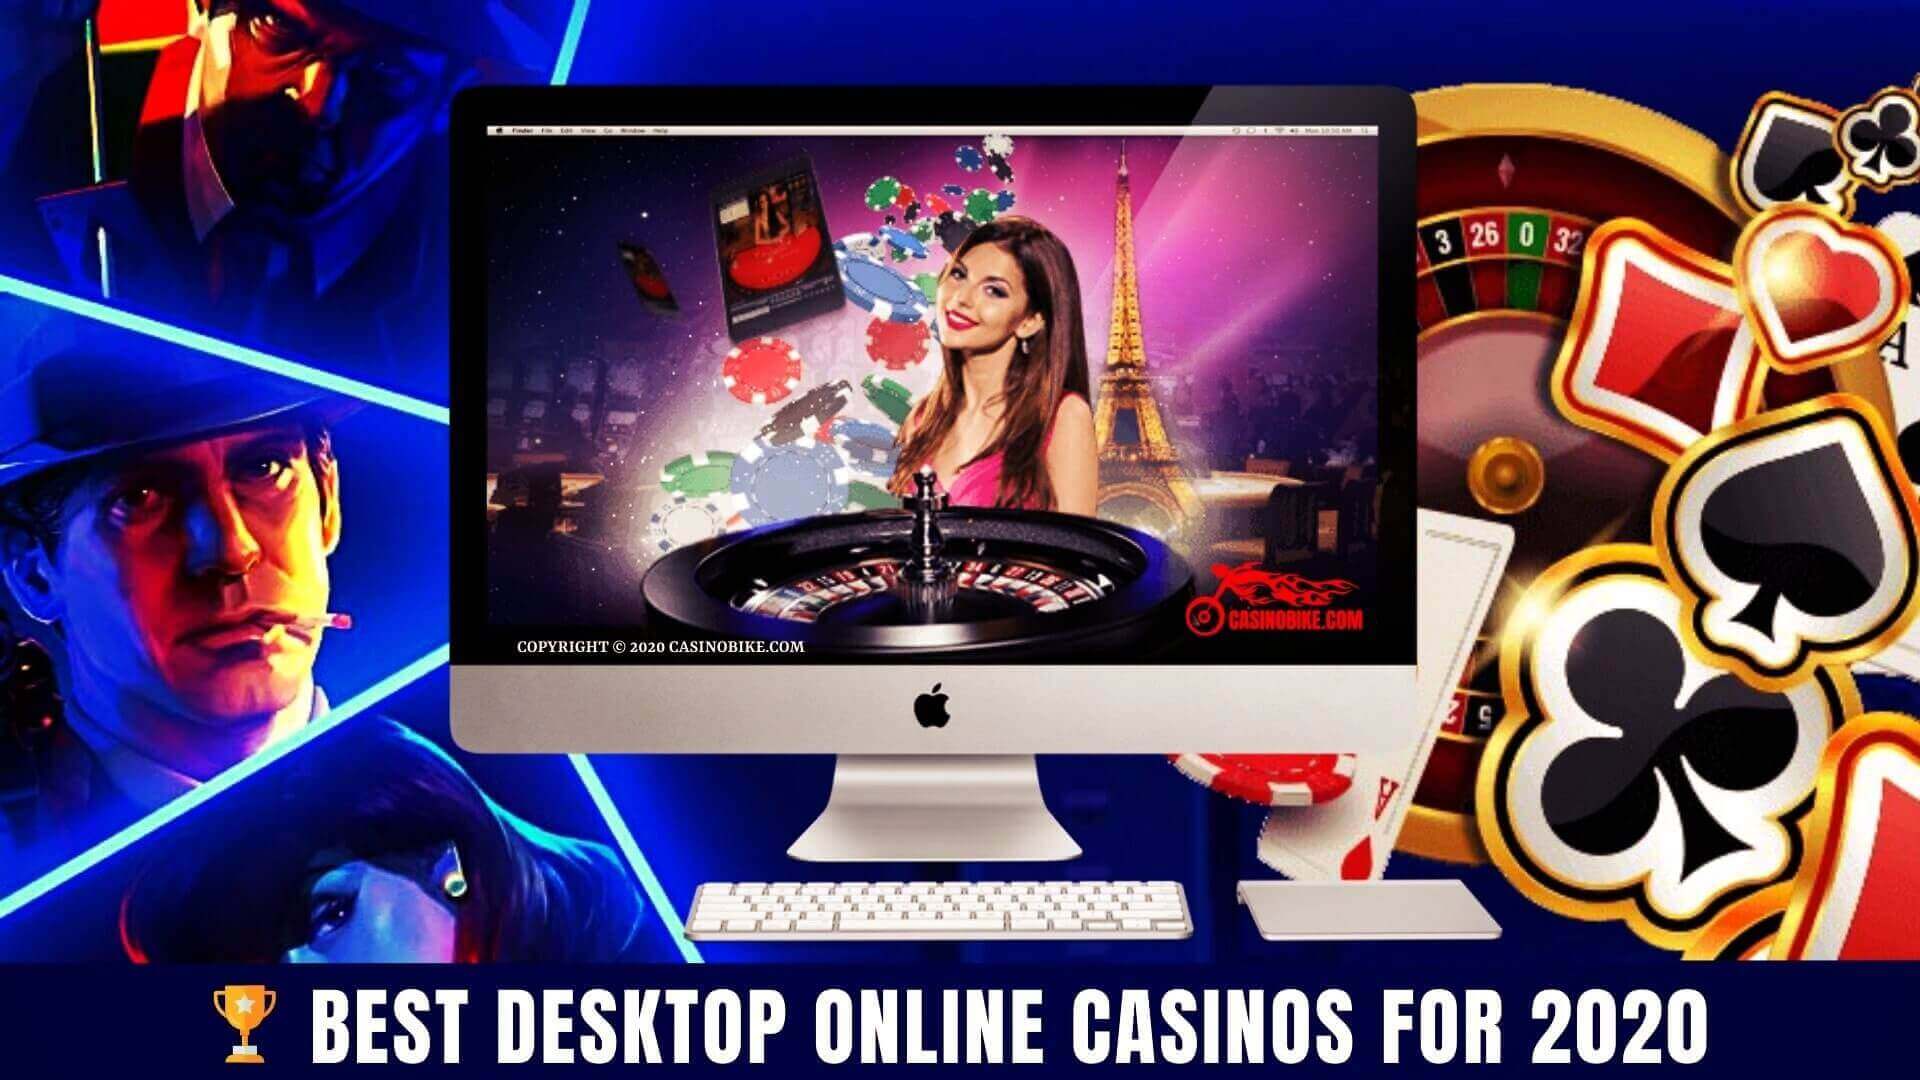 Best Desktop Online Casinos For 2020